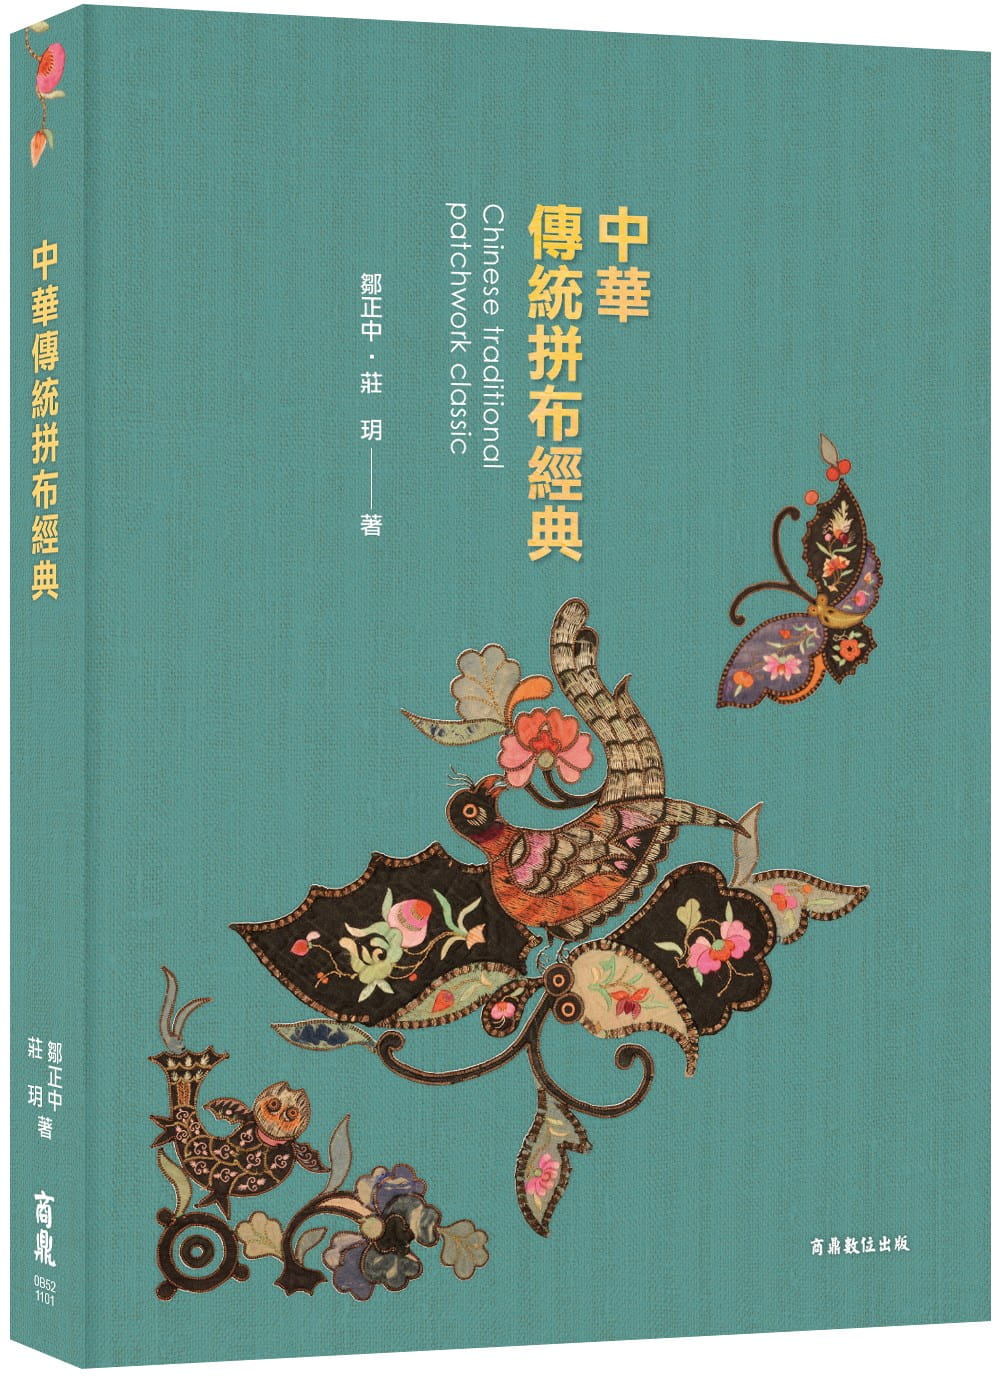 〔中華拼布文化經典〕中華傳統拼布經典